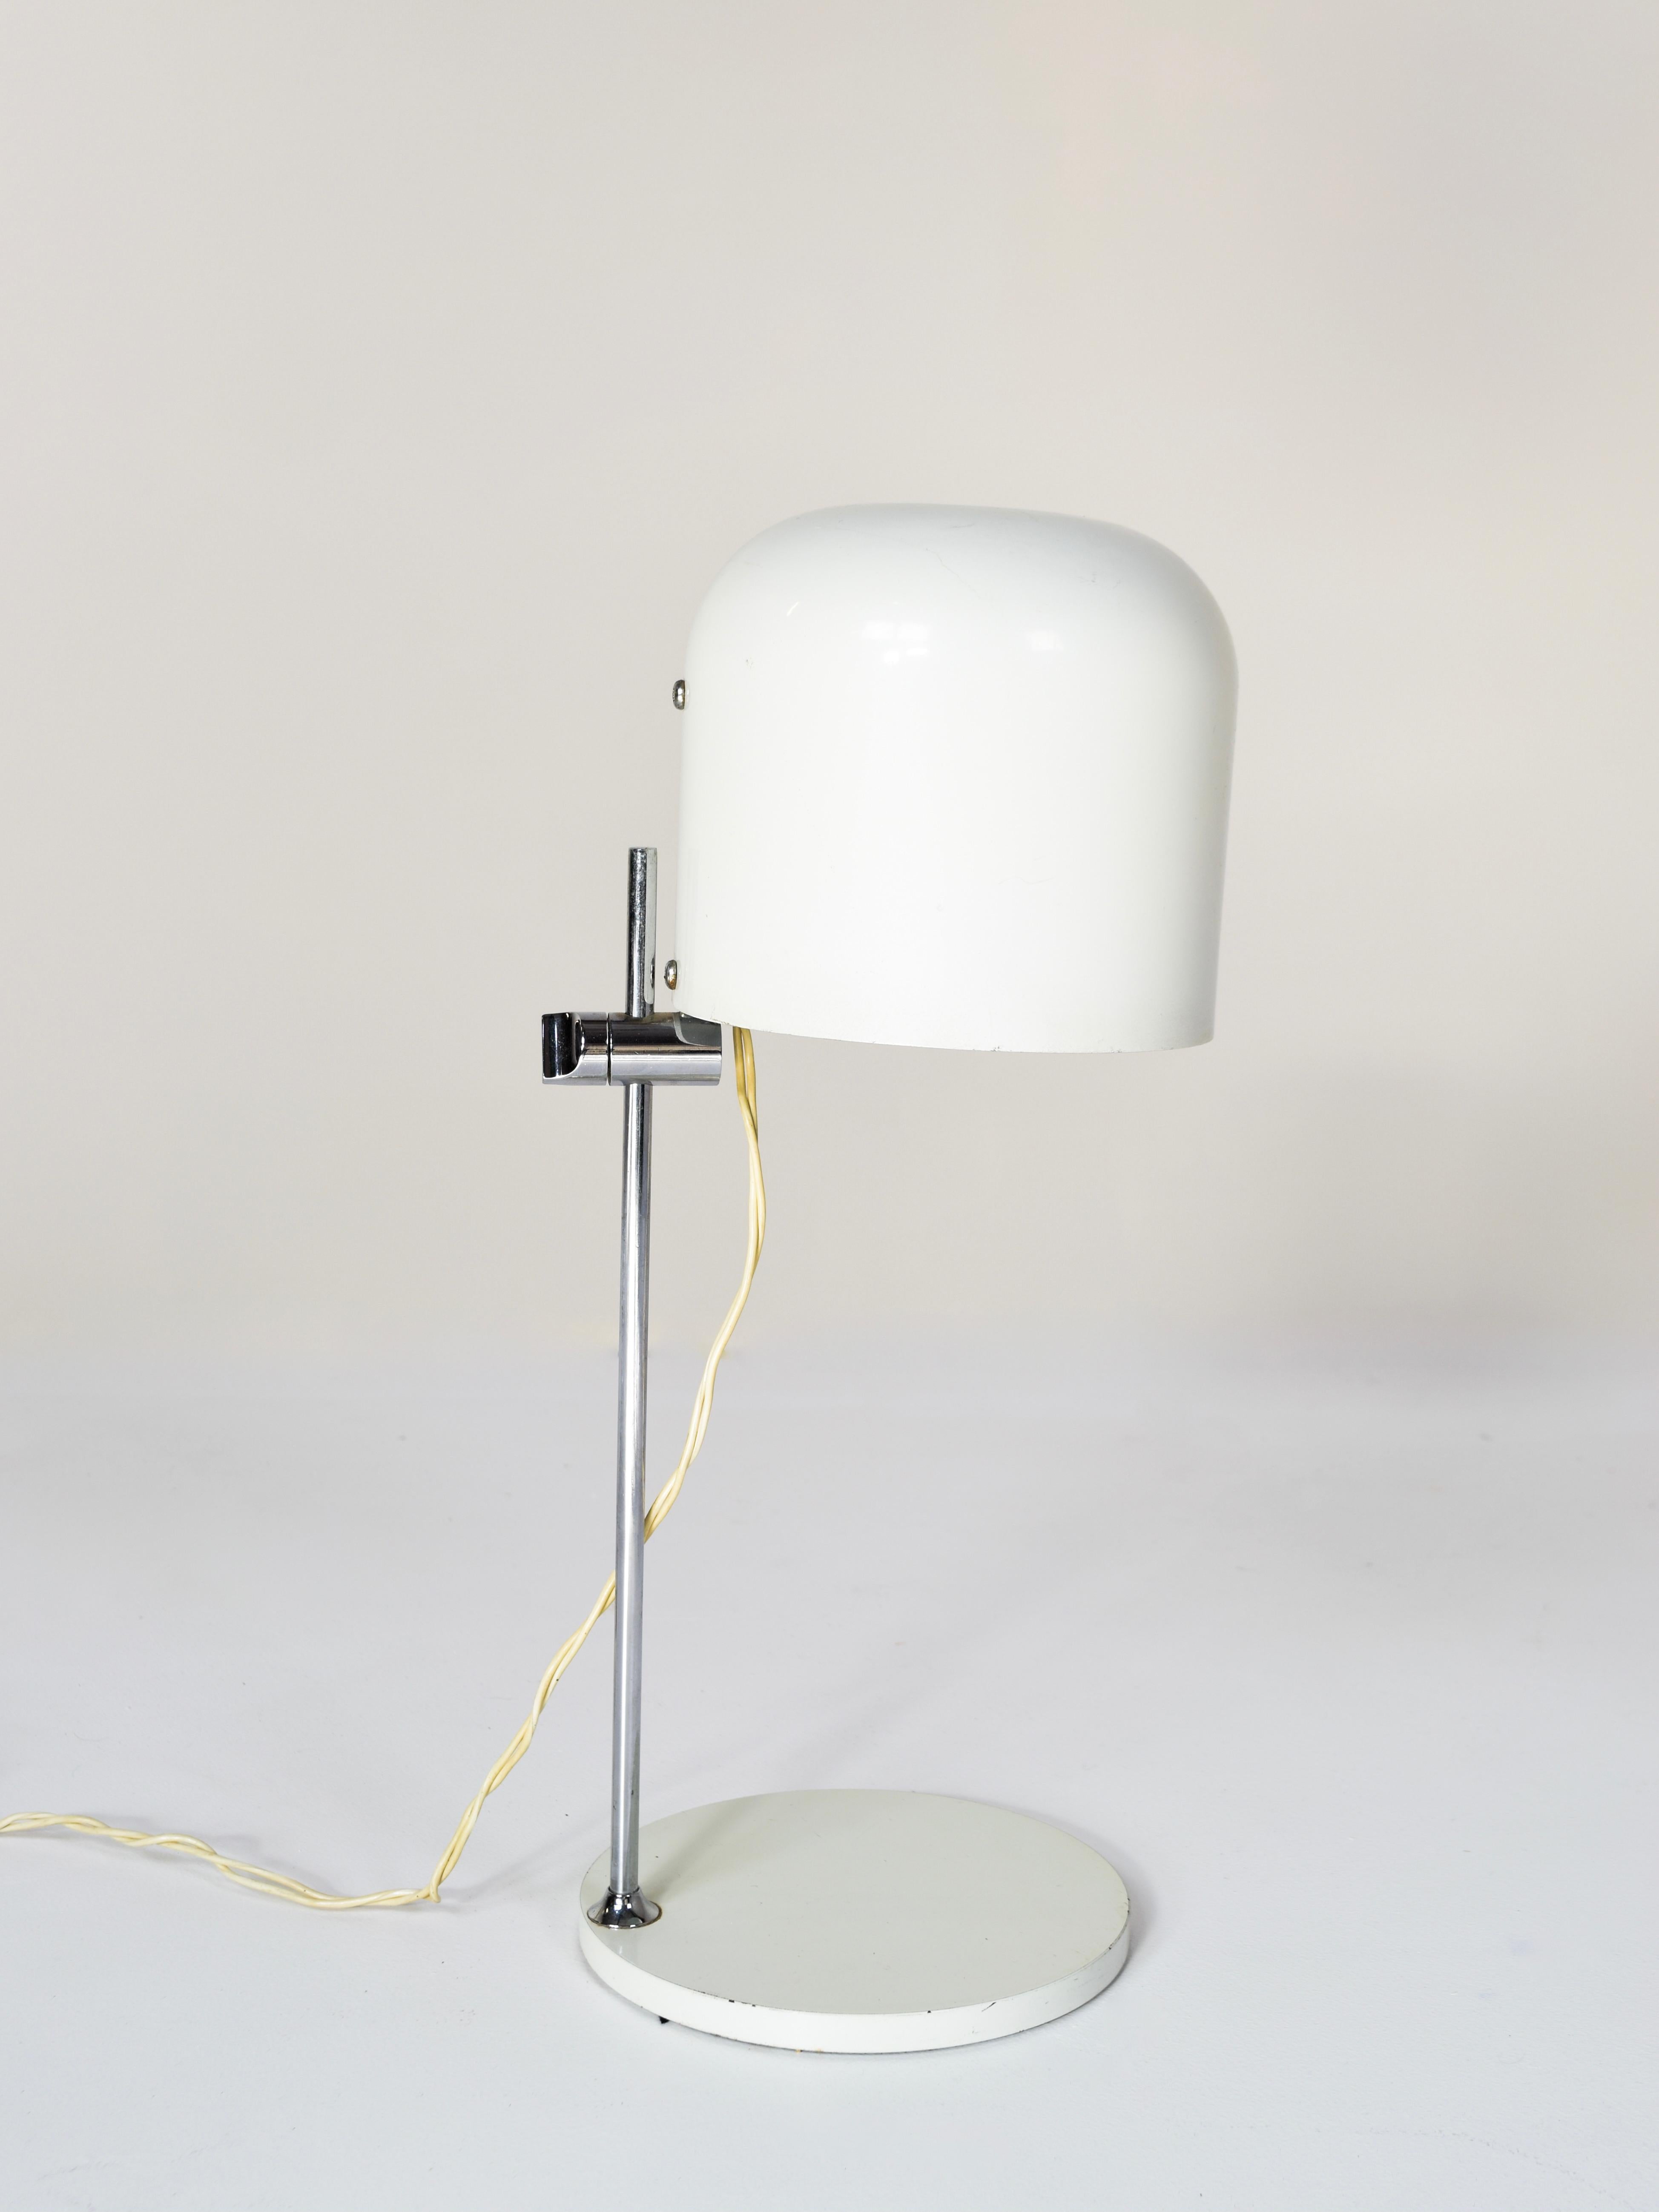 Rare lampe de table Metalarte d'André Ricard, Espagne, années 1960. Cette lampe est réglable en hauteur et l'abat-jour peut être tourné. La lampe est blanche avec un pied en métal et une base blanche, le tout en métal. Elle a un design minimaliste